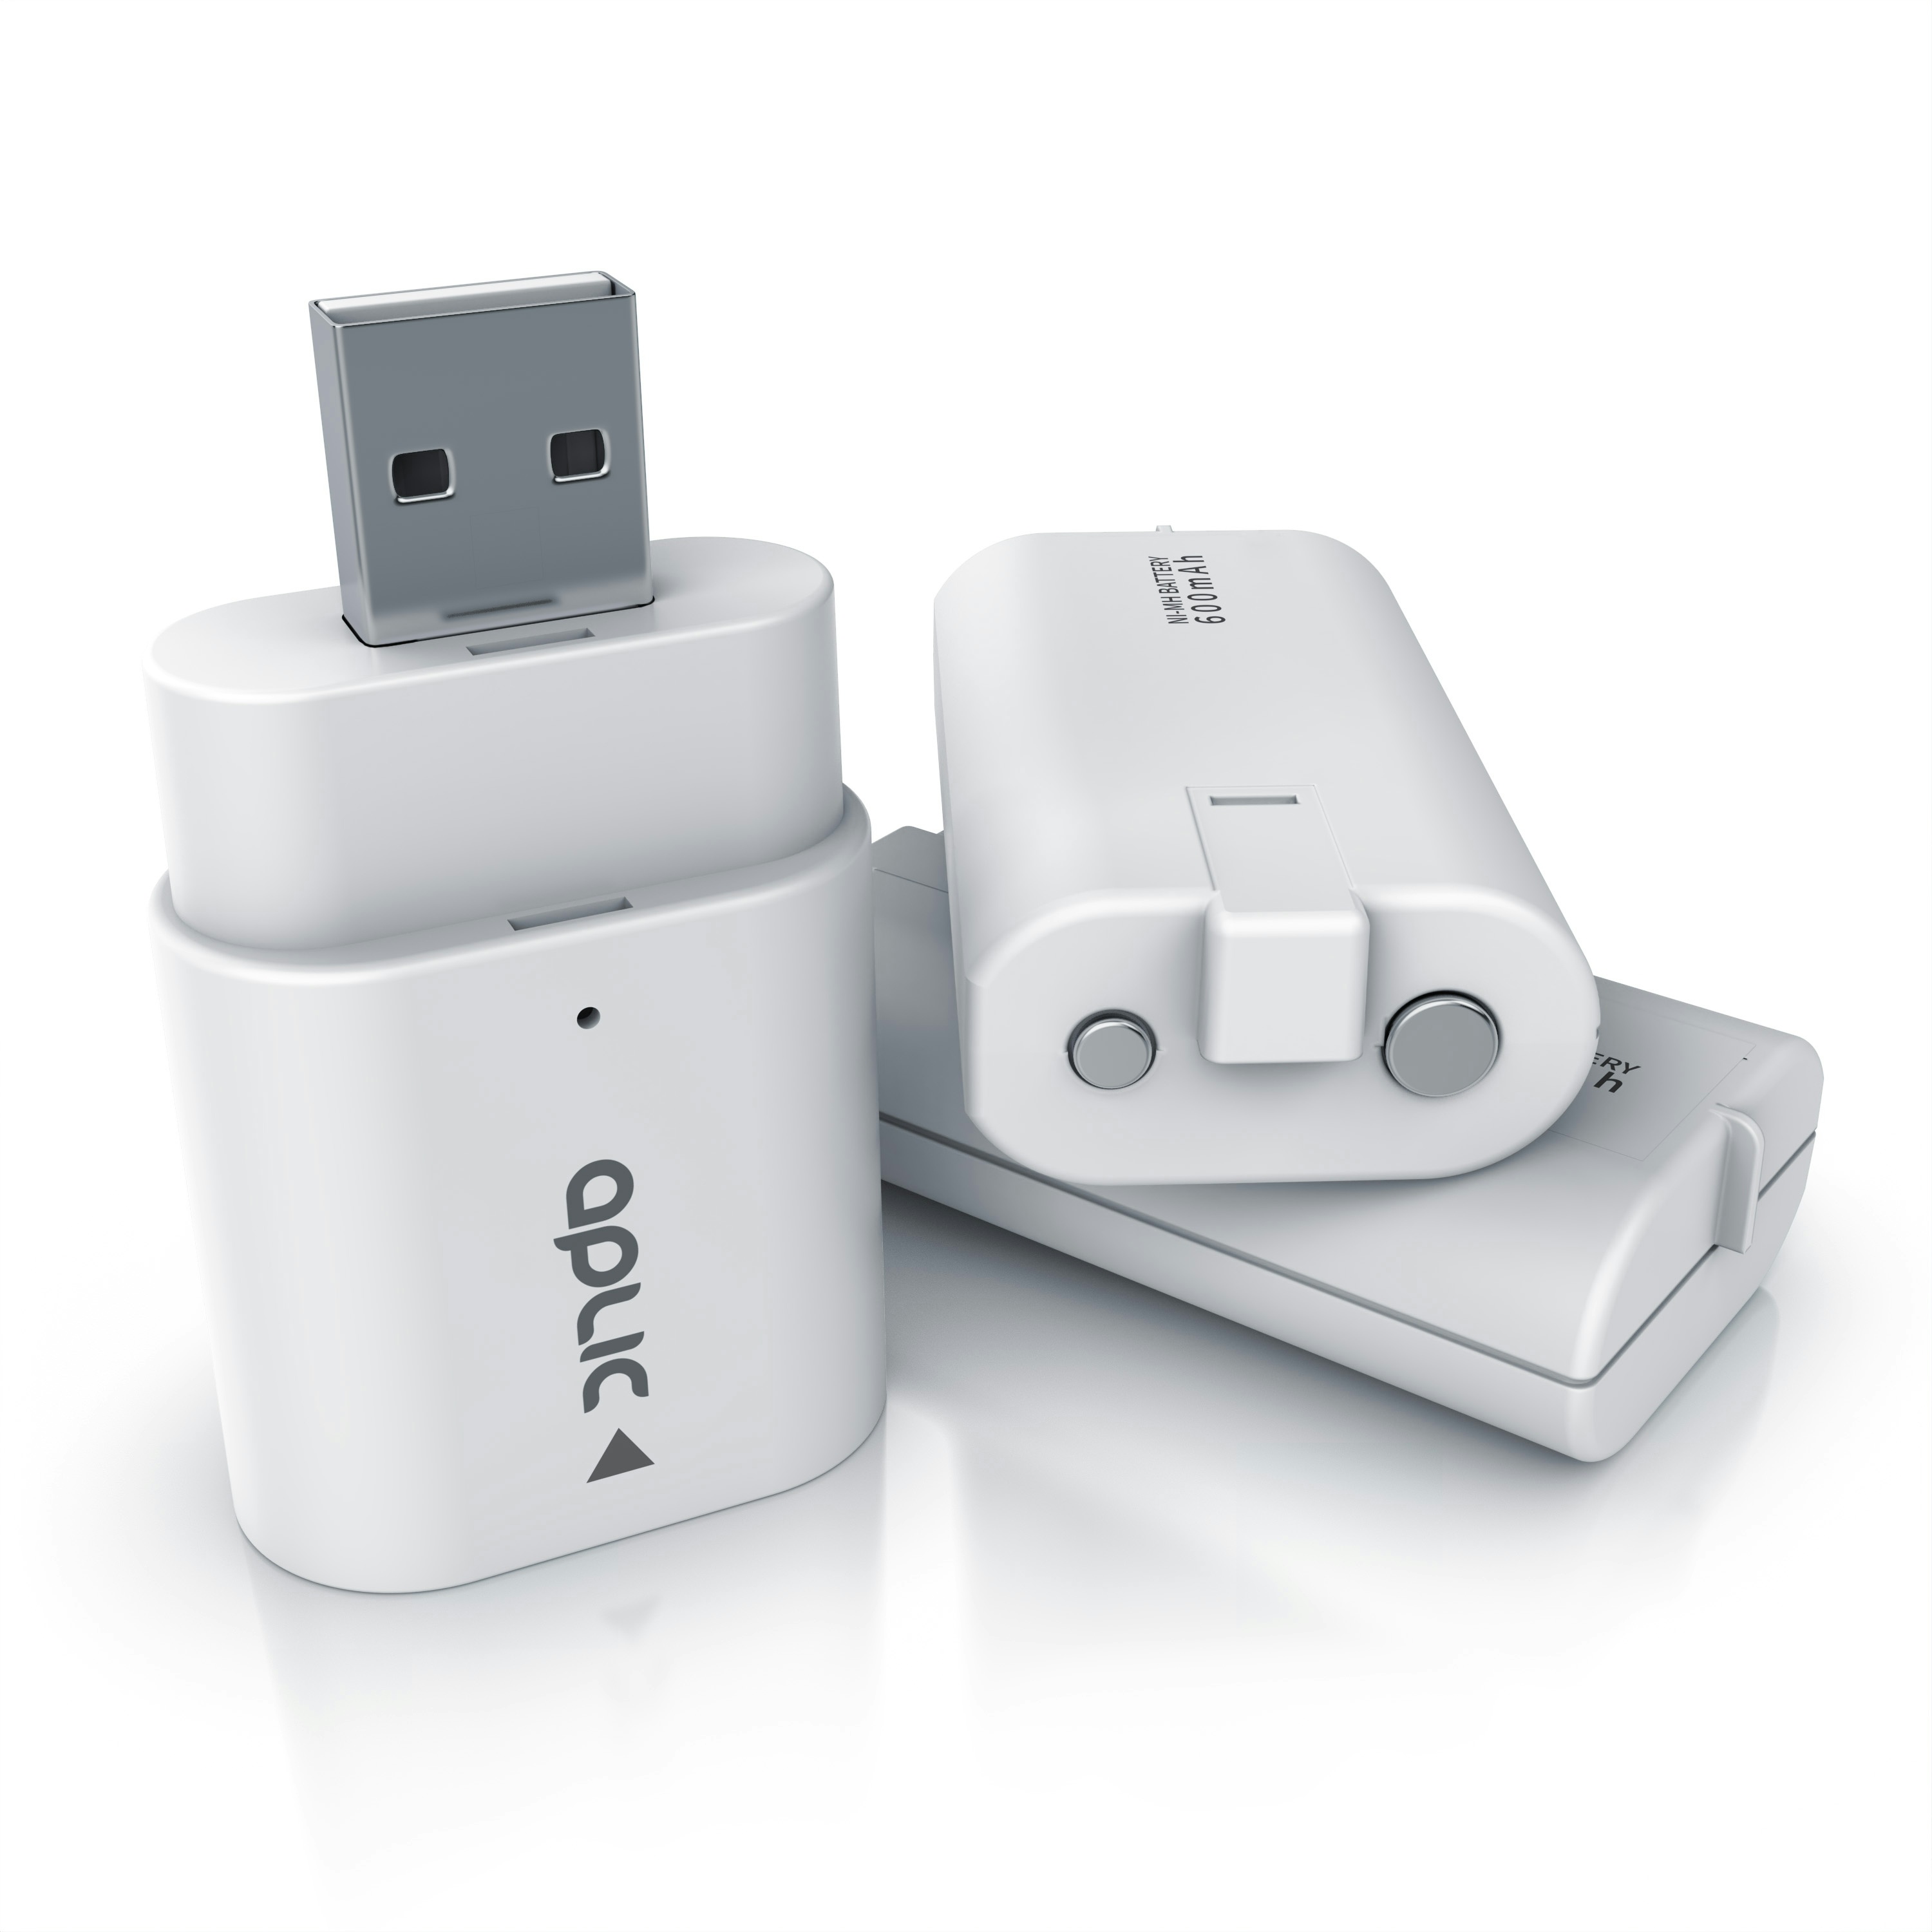 Aplic Ladegerät für XBox One Controller und Xbox Series Gamepad - 2 x Akkus 600 mAh für Gamepads - Ladeadapter - für / kompatibel mit XBox One S X